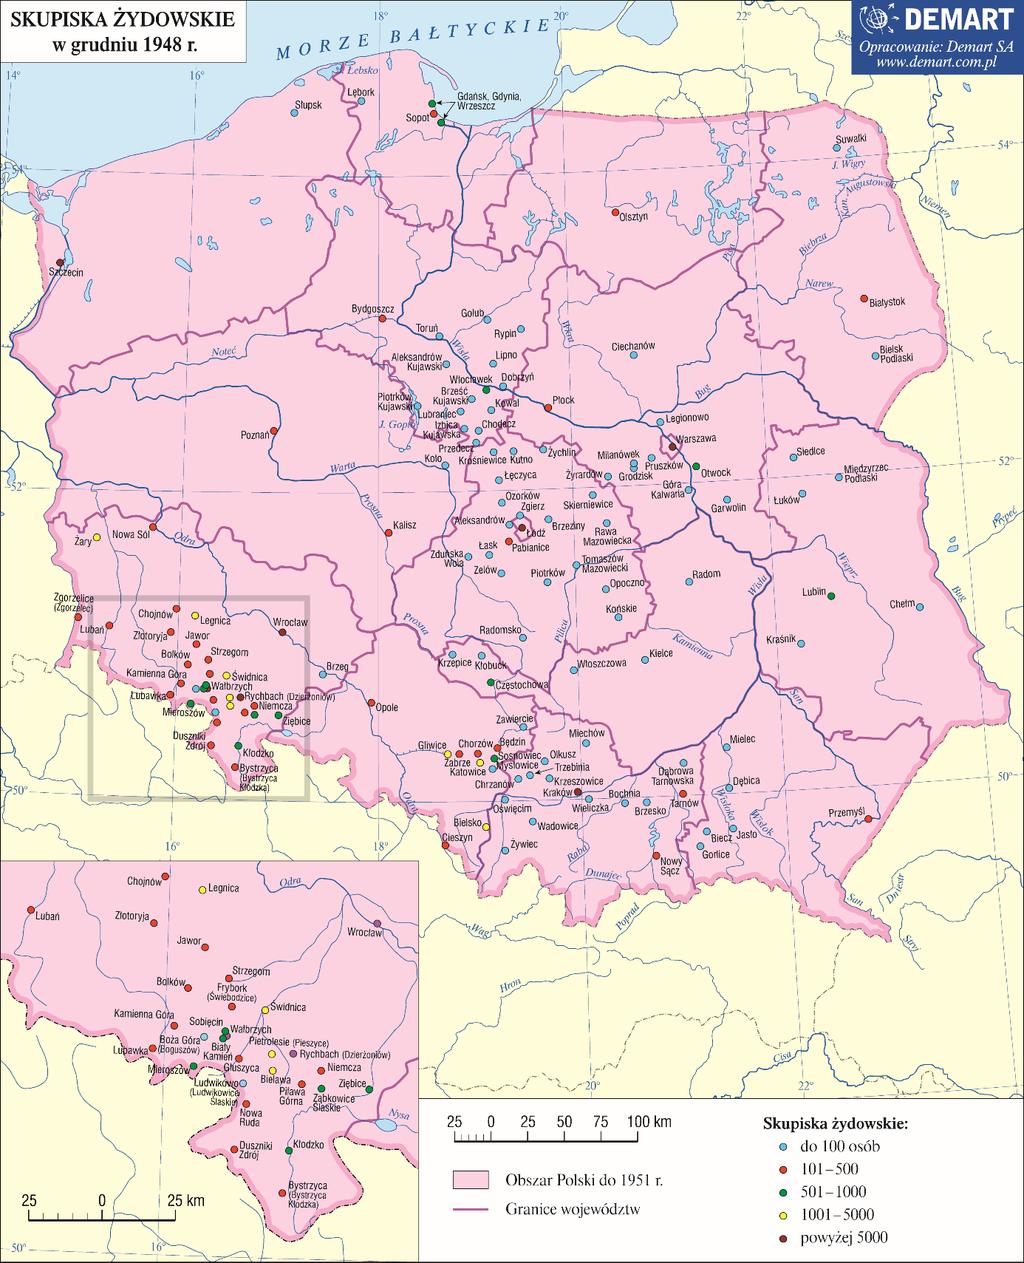 ZAŁĄCZNIK NR 3 Źródło map: Atlas historii Żydów polskich, Warszawa 2010, s.